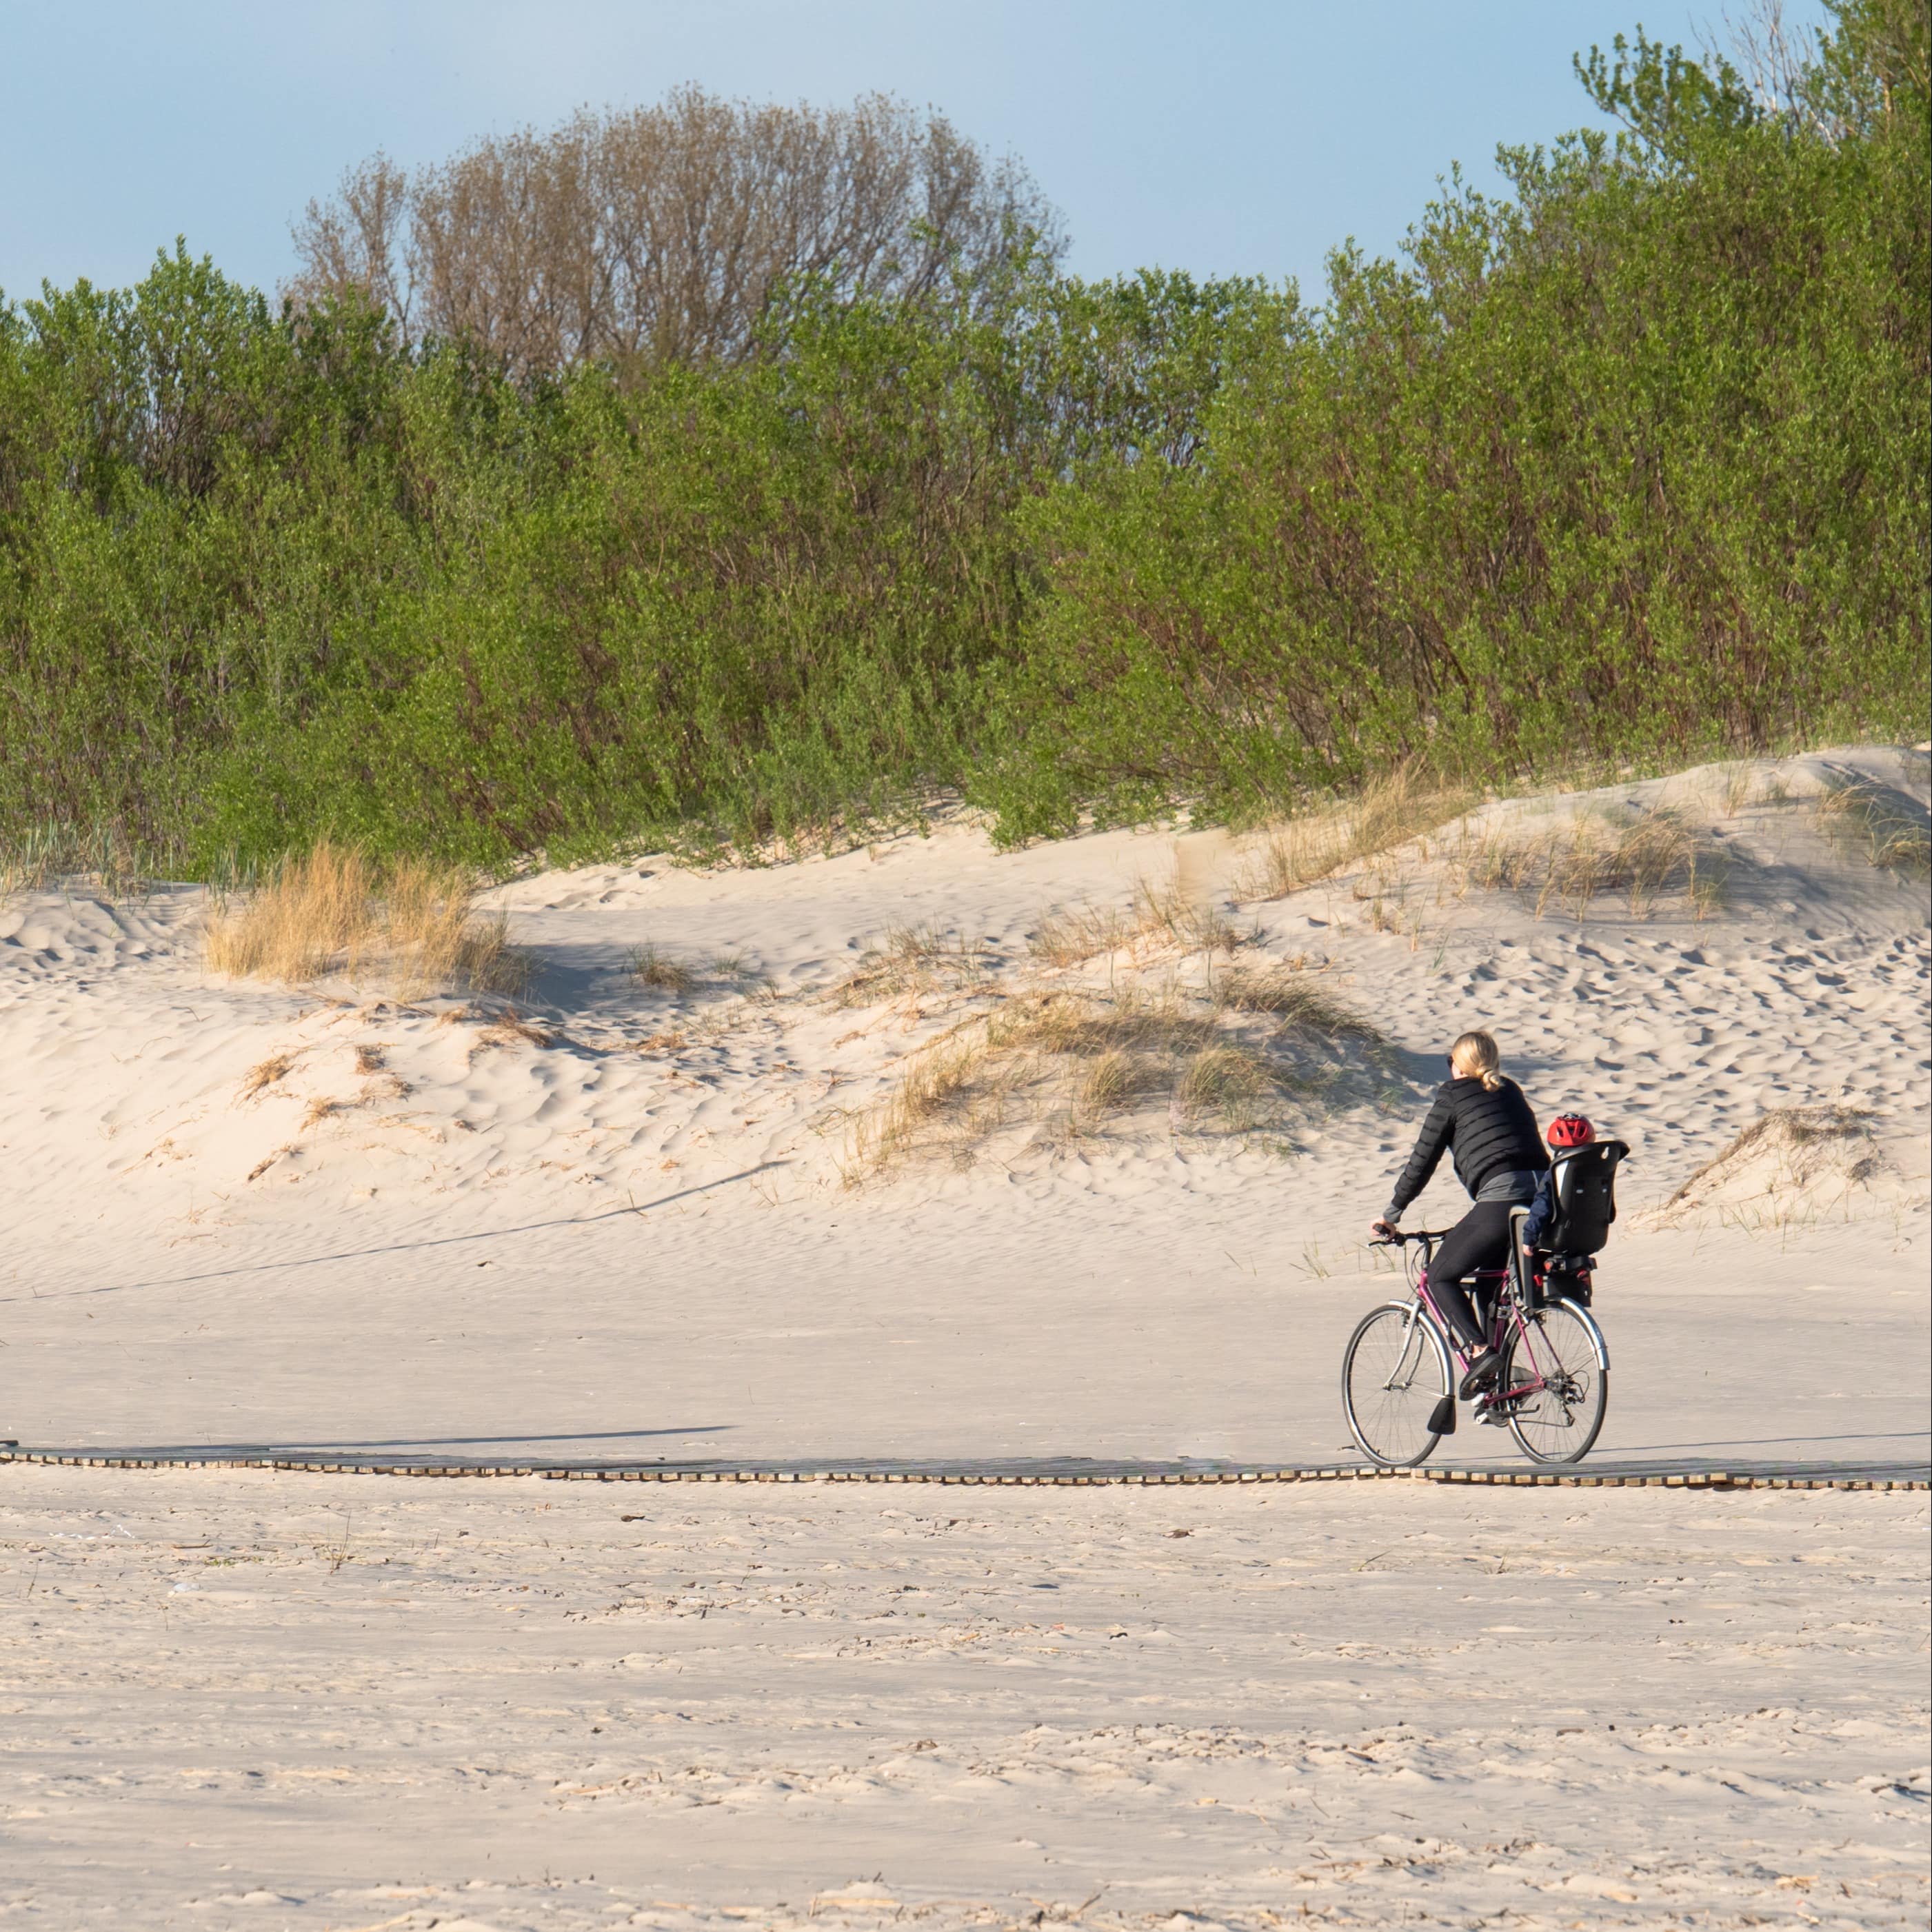 Eltern auf Fahrrädern fahren einen Holzweg am Strand entlang, die Mutter hat ein Kleinkind im Kindersitz.